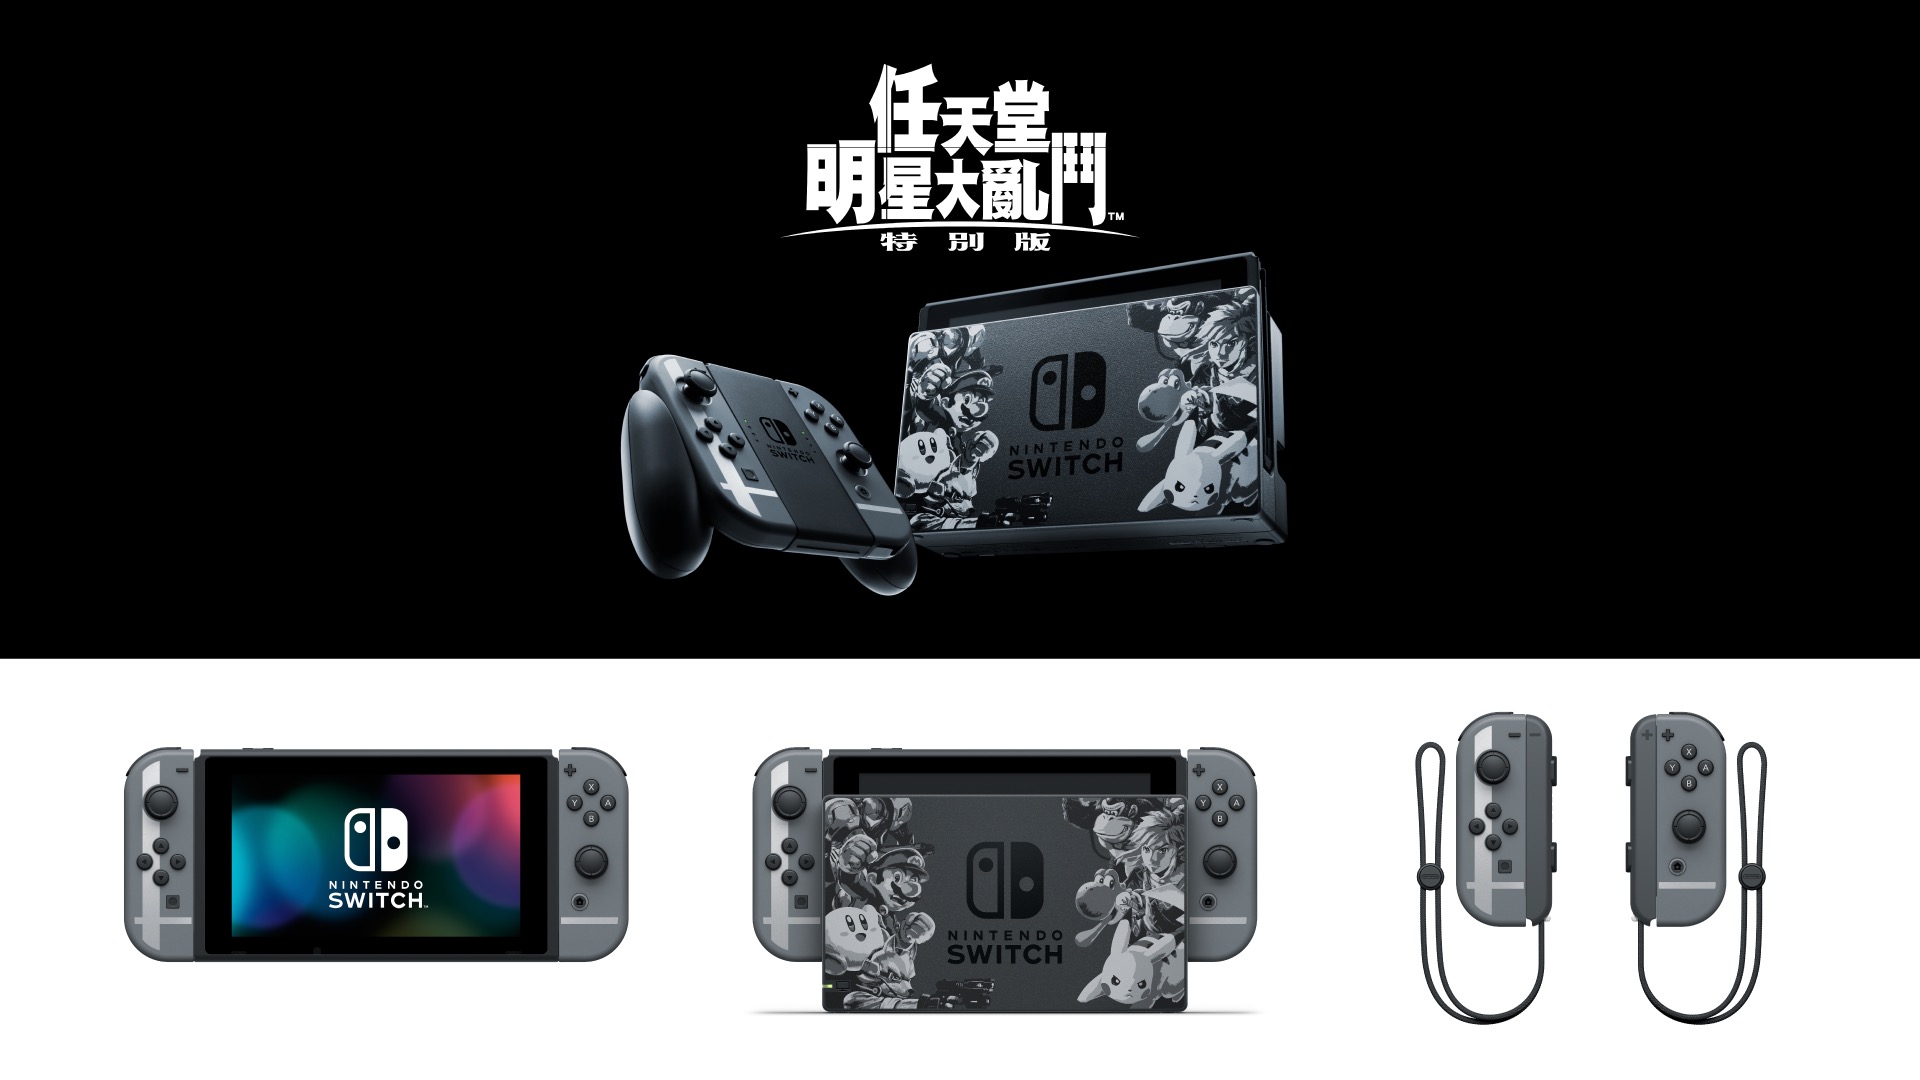 任天堂明星大亂鬥特別版》確認推出Nintendo Switch 主機同捆特別組合《Super Smash Bros. Ultimate》 - 巴哈姆特